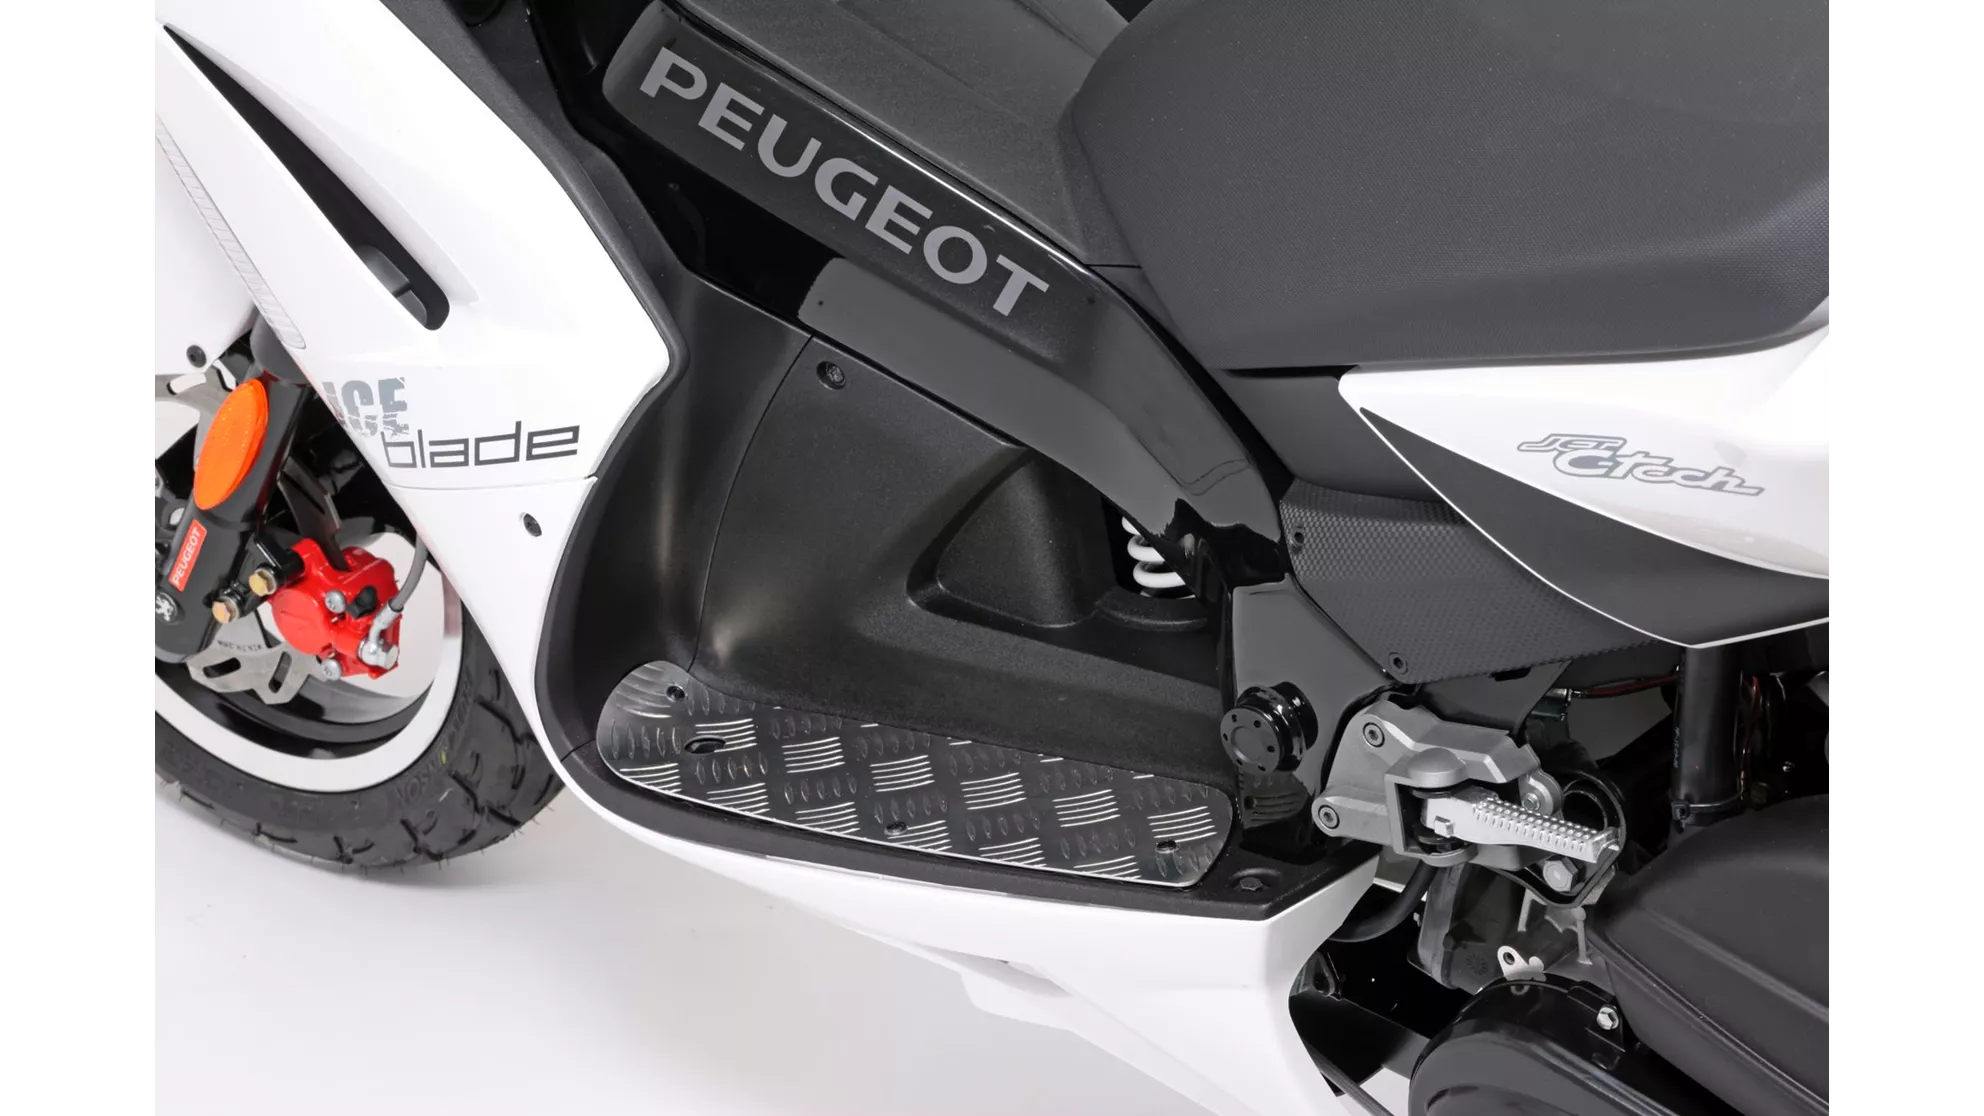 Peugeot Jet Force 50 Iceblade - Imagen 1